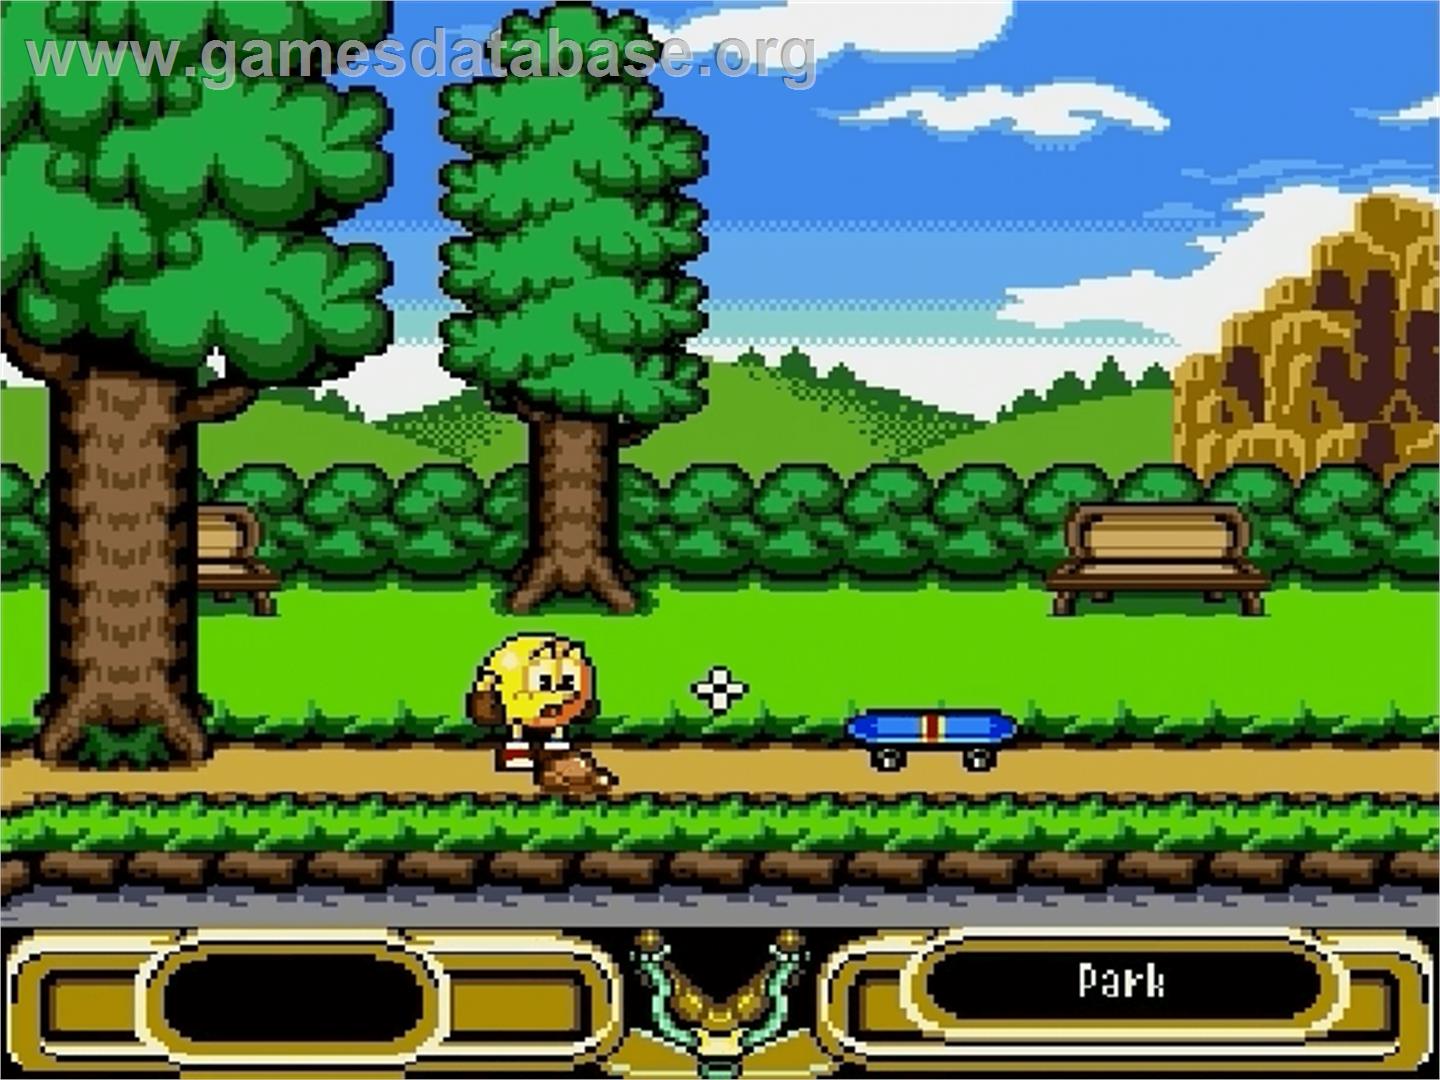 Pac-Man 2: The New Adventures - Sega Genesis - Artwork - In Game